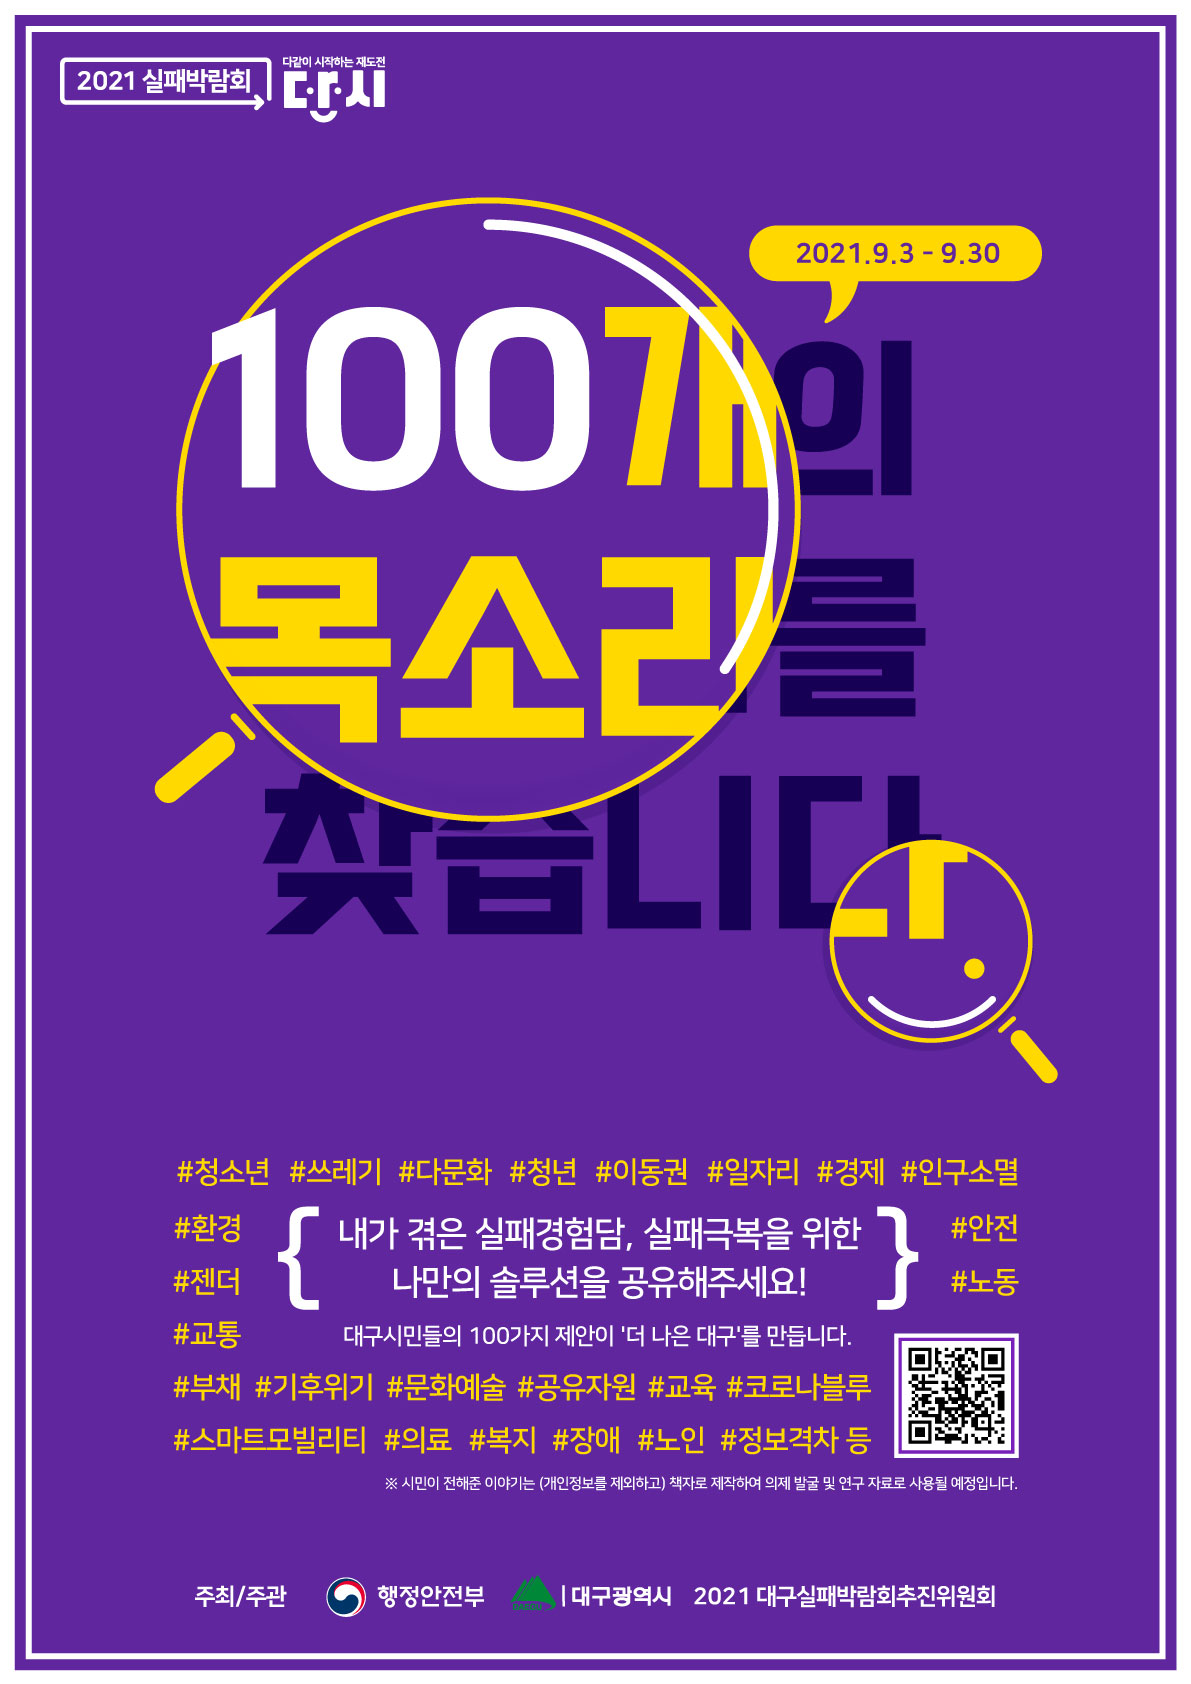 2021_실패박람회_예비의제제안_포스터(최종).jpg